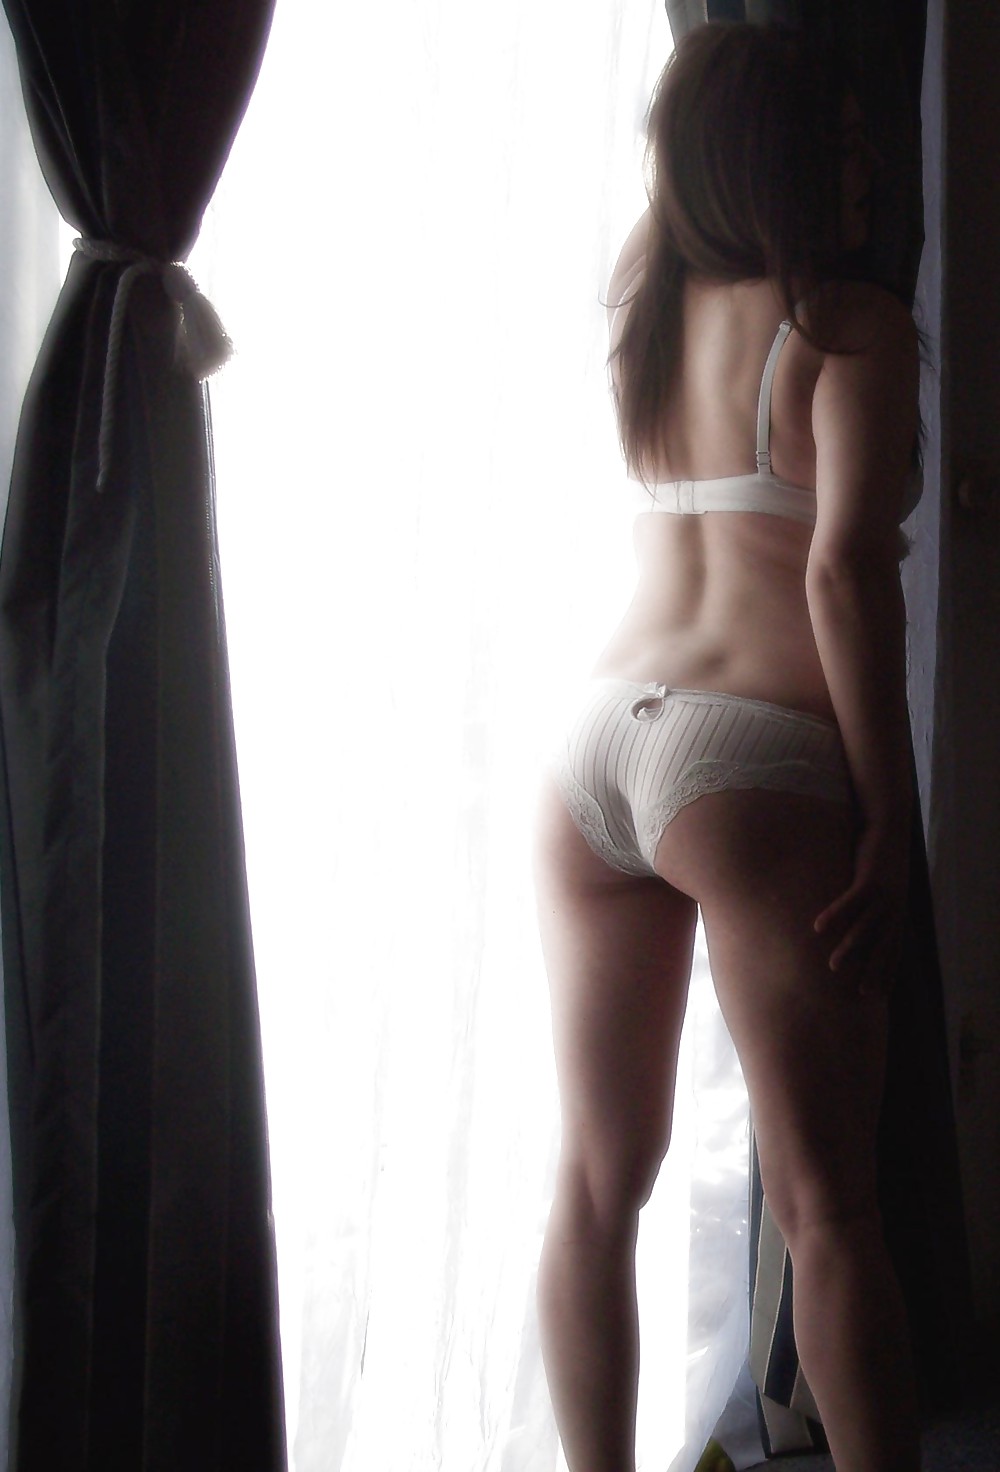 White panties and bra porn gallery